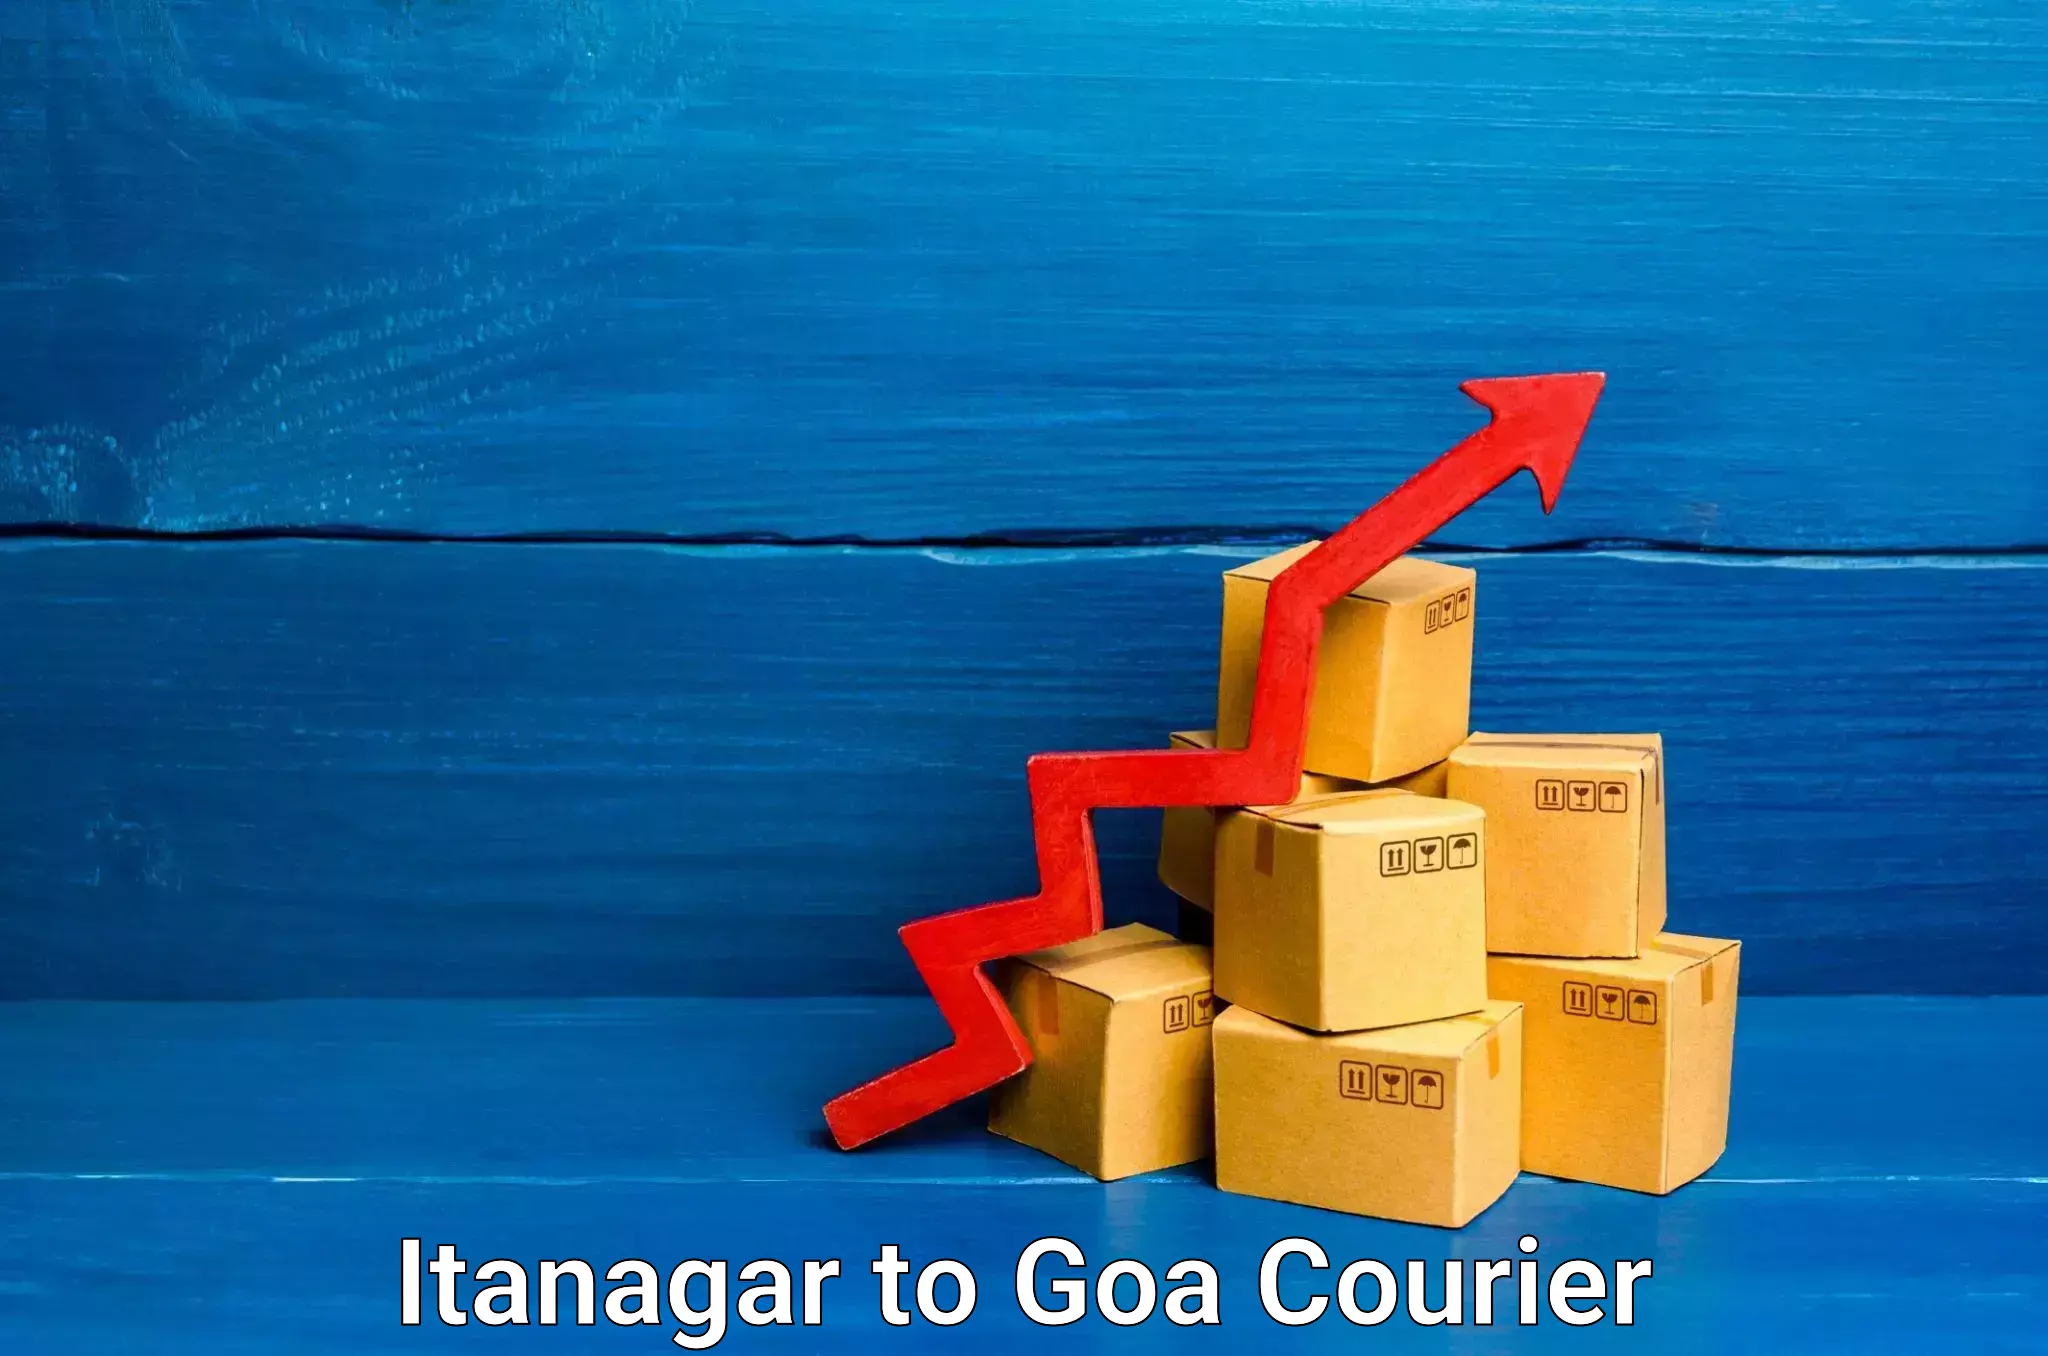 Digital courier platforms Itanagar to Goa